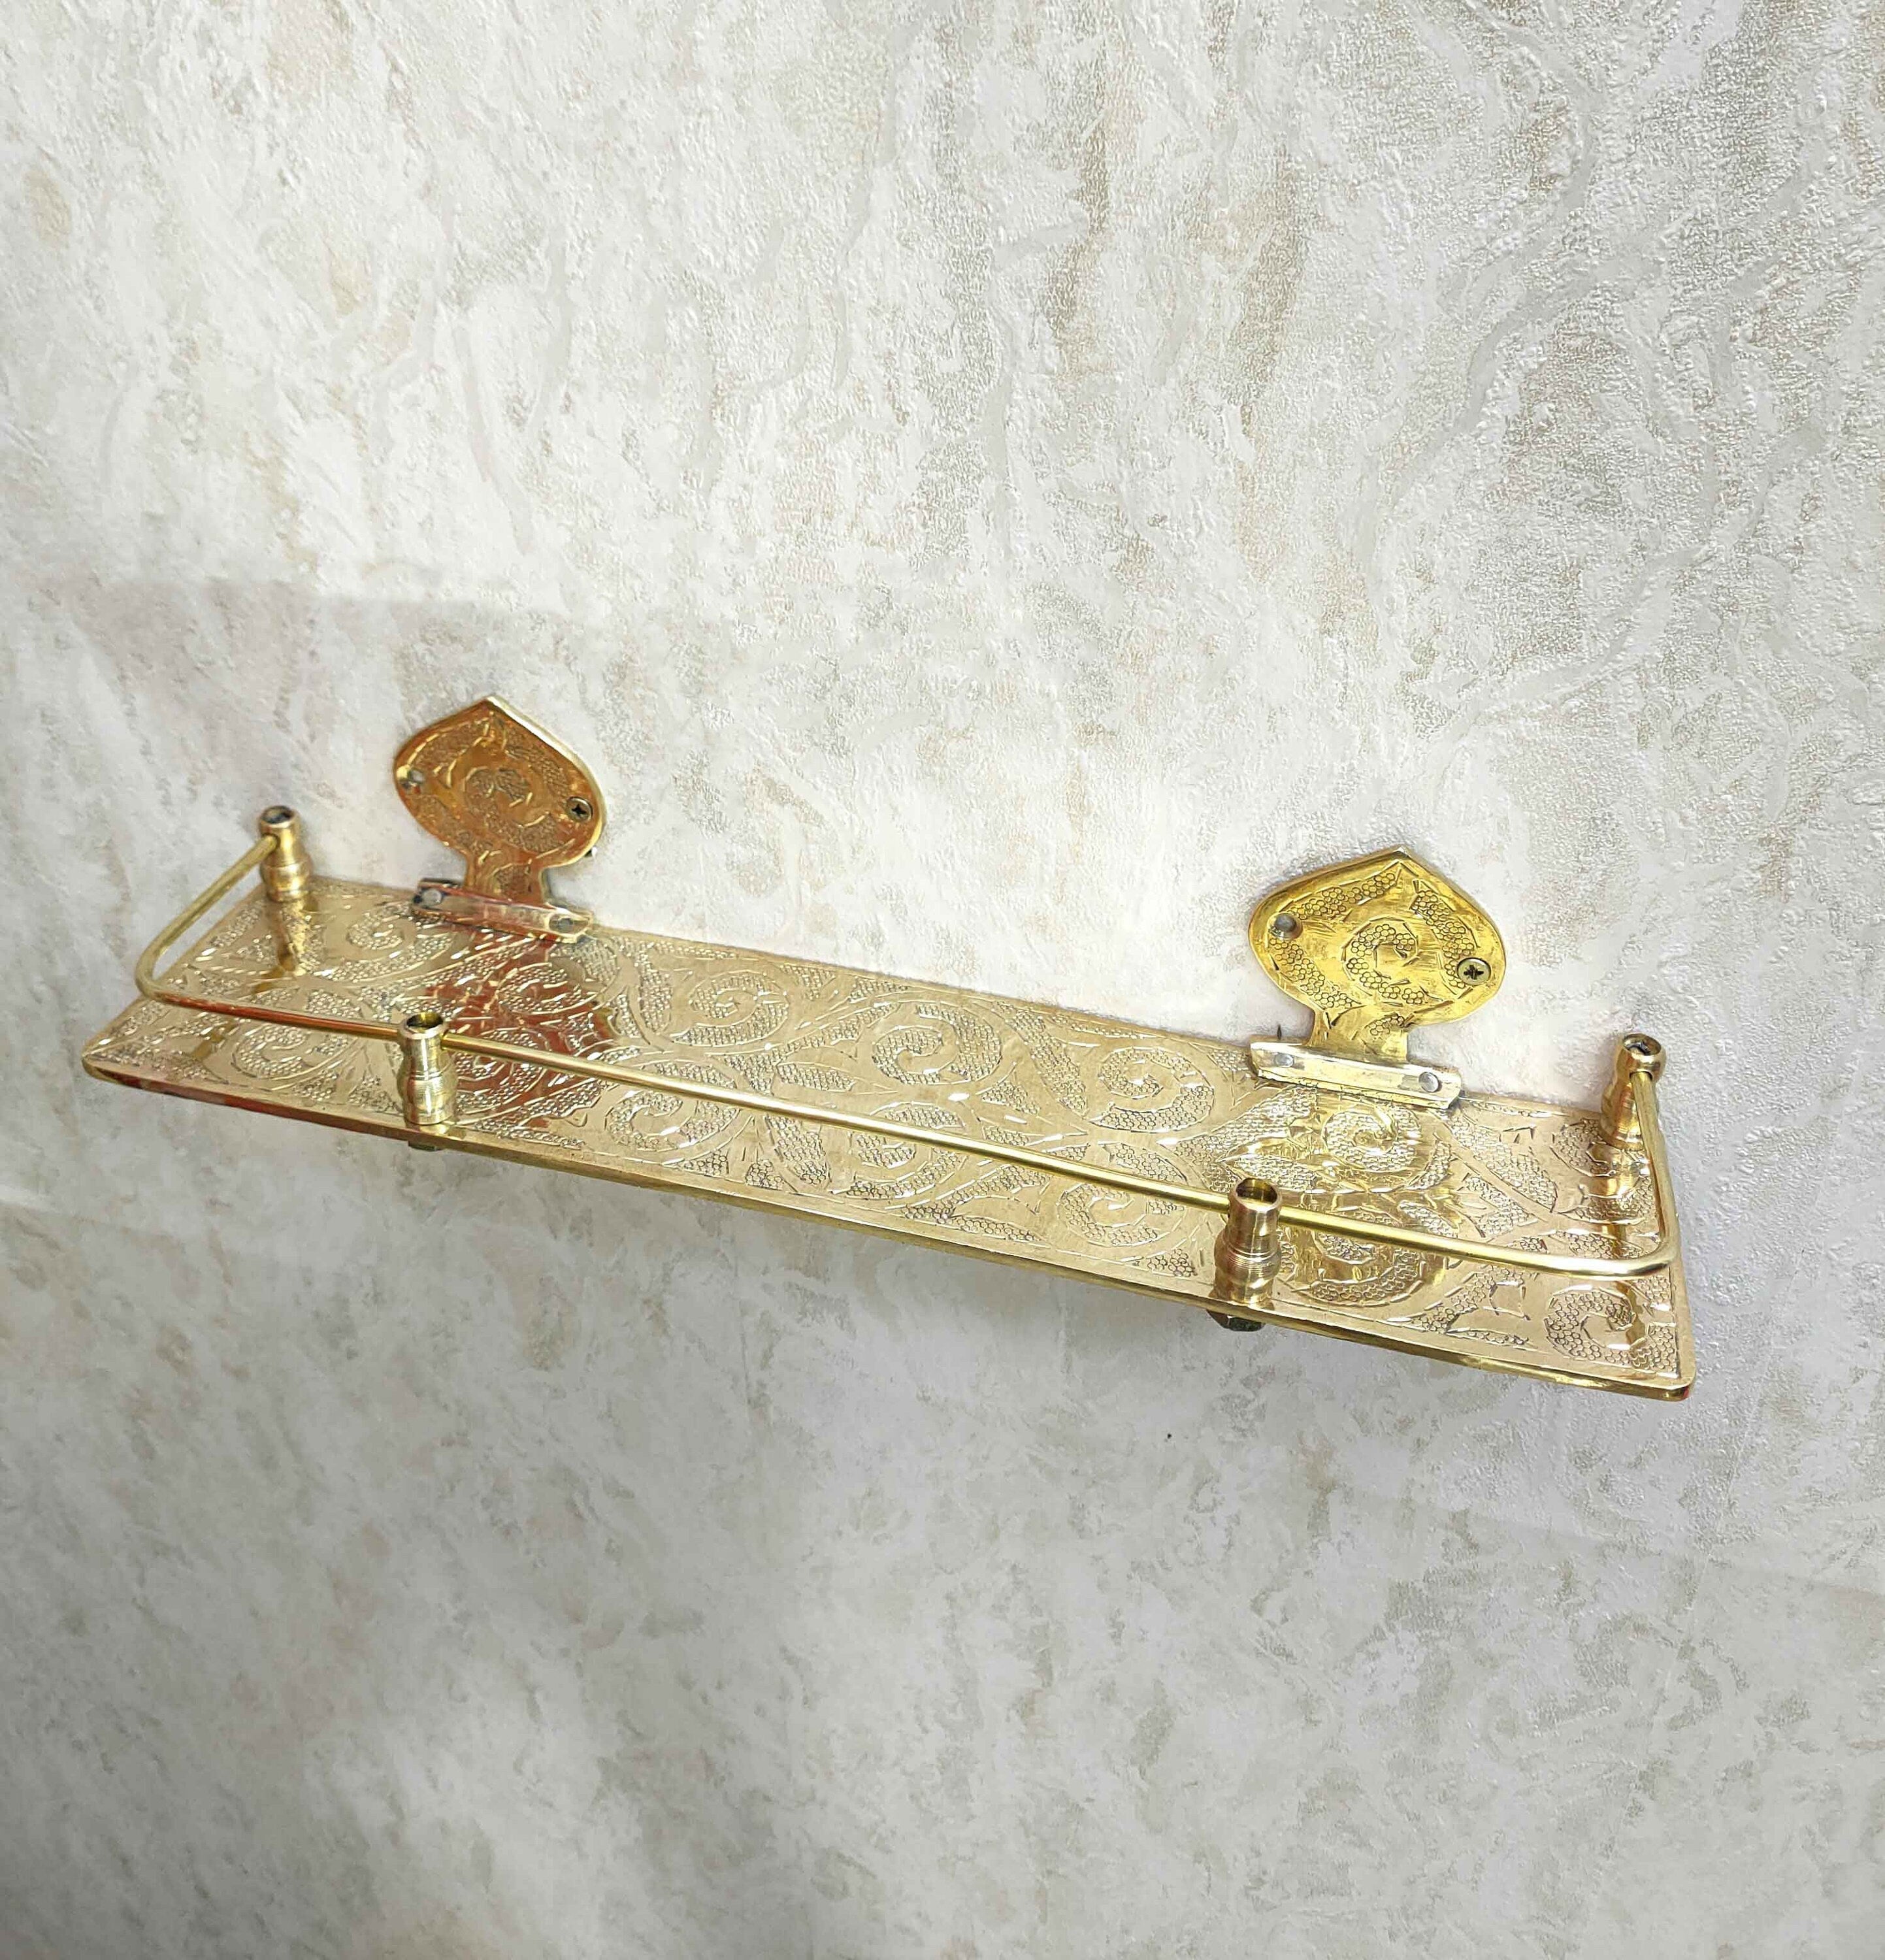 Engraved Solid Brass Wall Bathroom Shelf, Small Bathroom Shelf